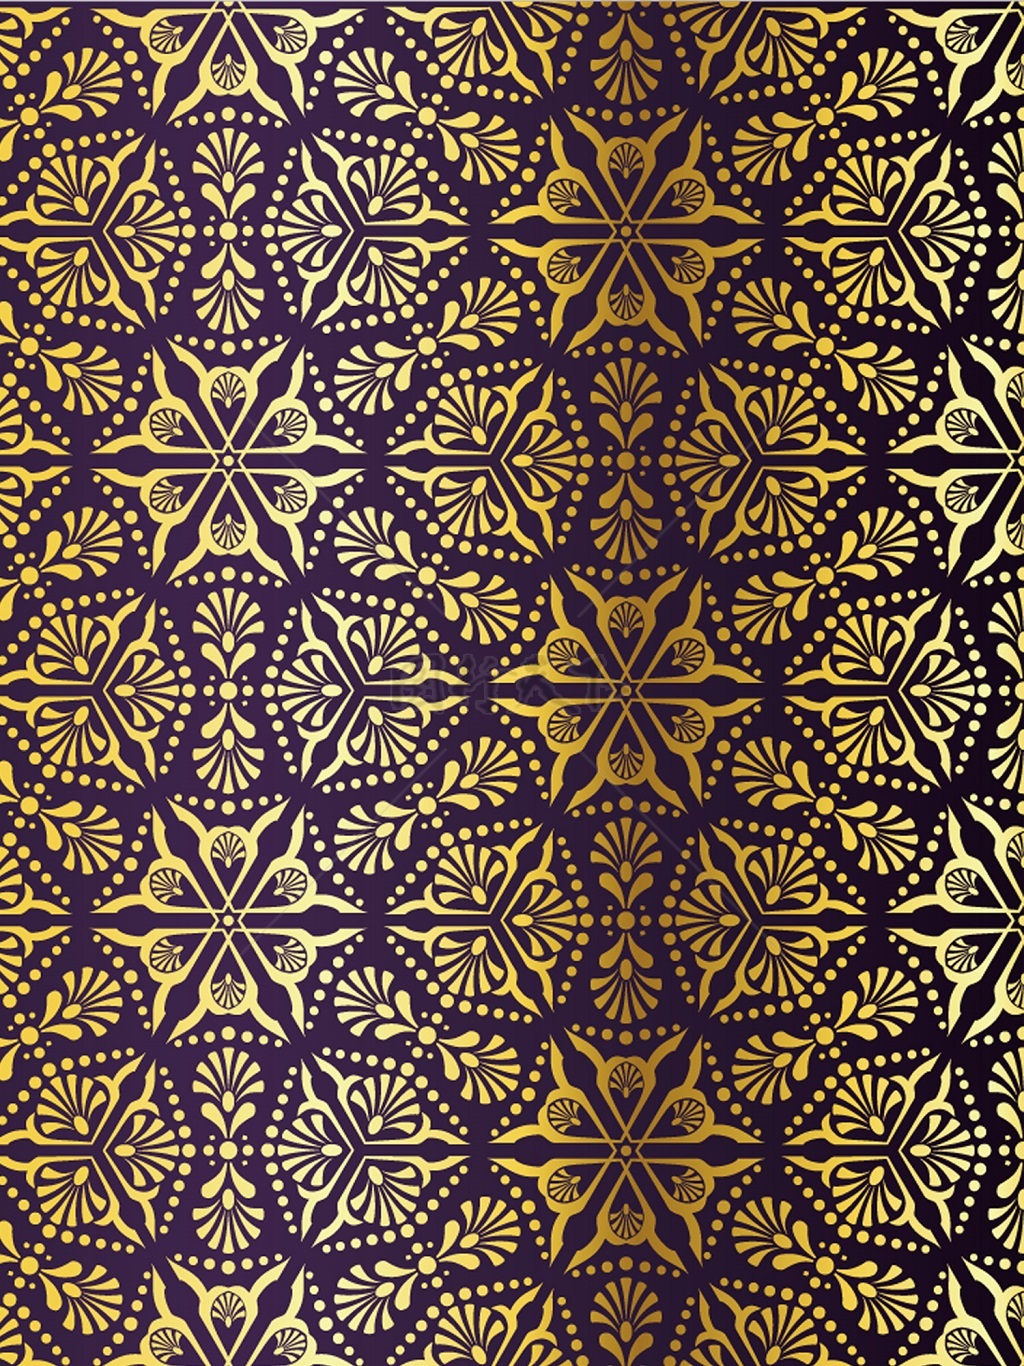 传统 欧式俄式花卉底图底纹  图案背景贴图 紫底满格六边金花.